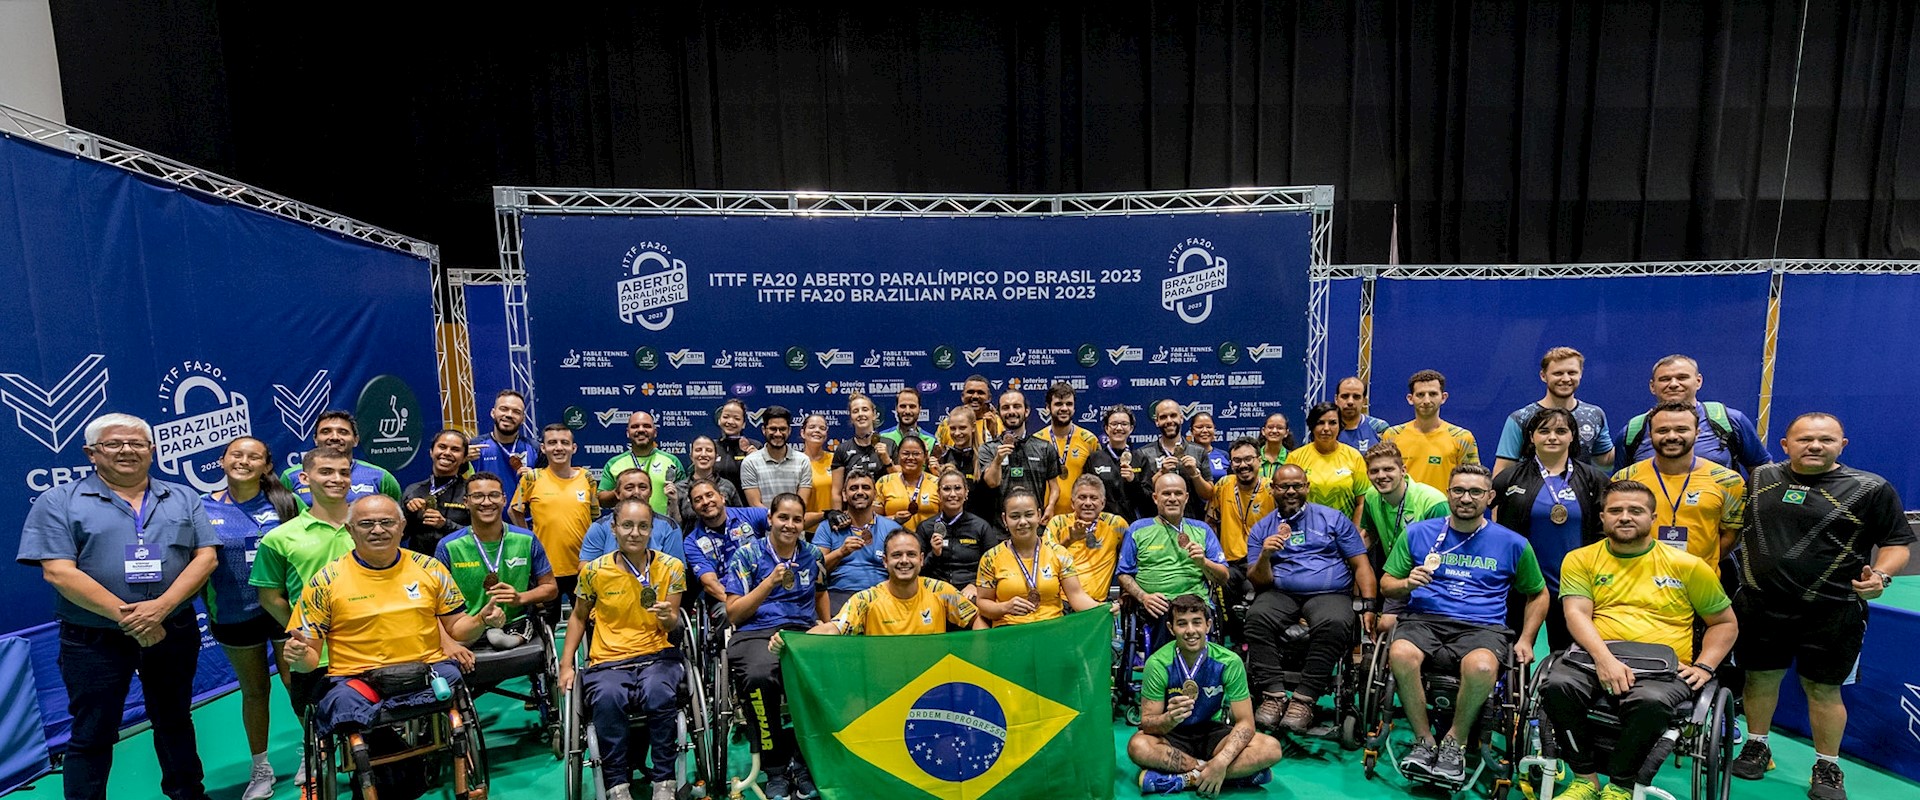 Definida a Seleção Brasileira de tênis de mesa que vai disputar os Jogos Parapan-Americanos de Santiago